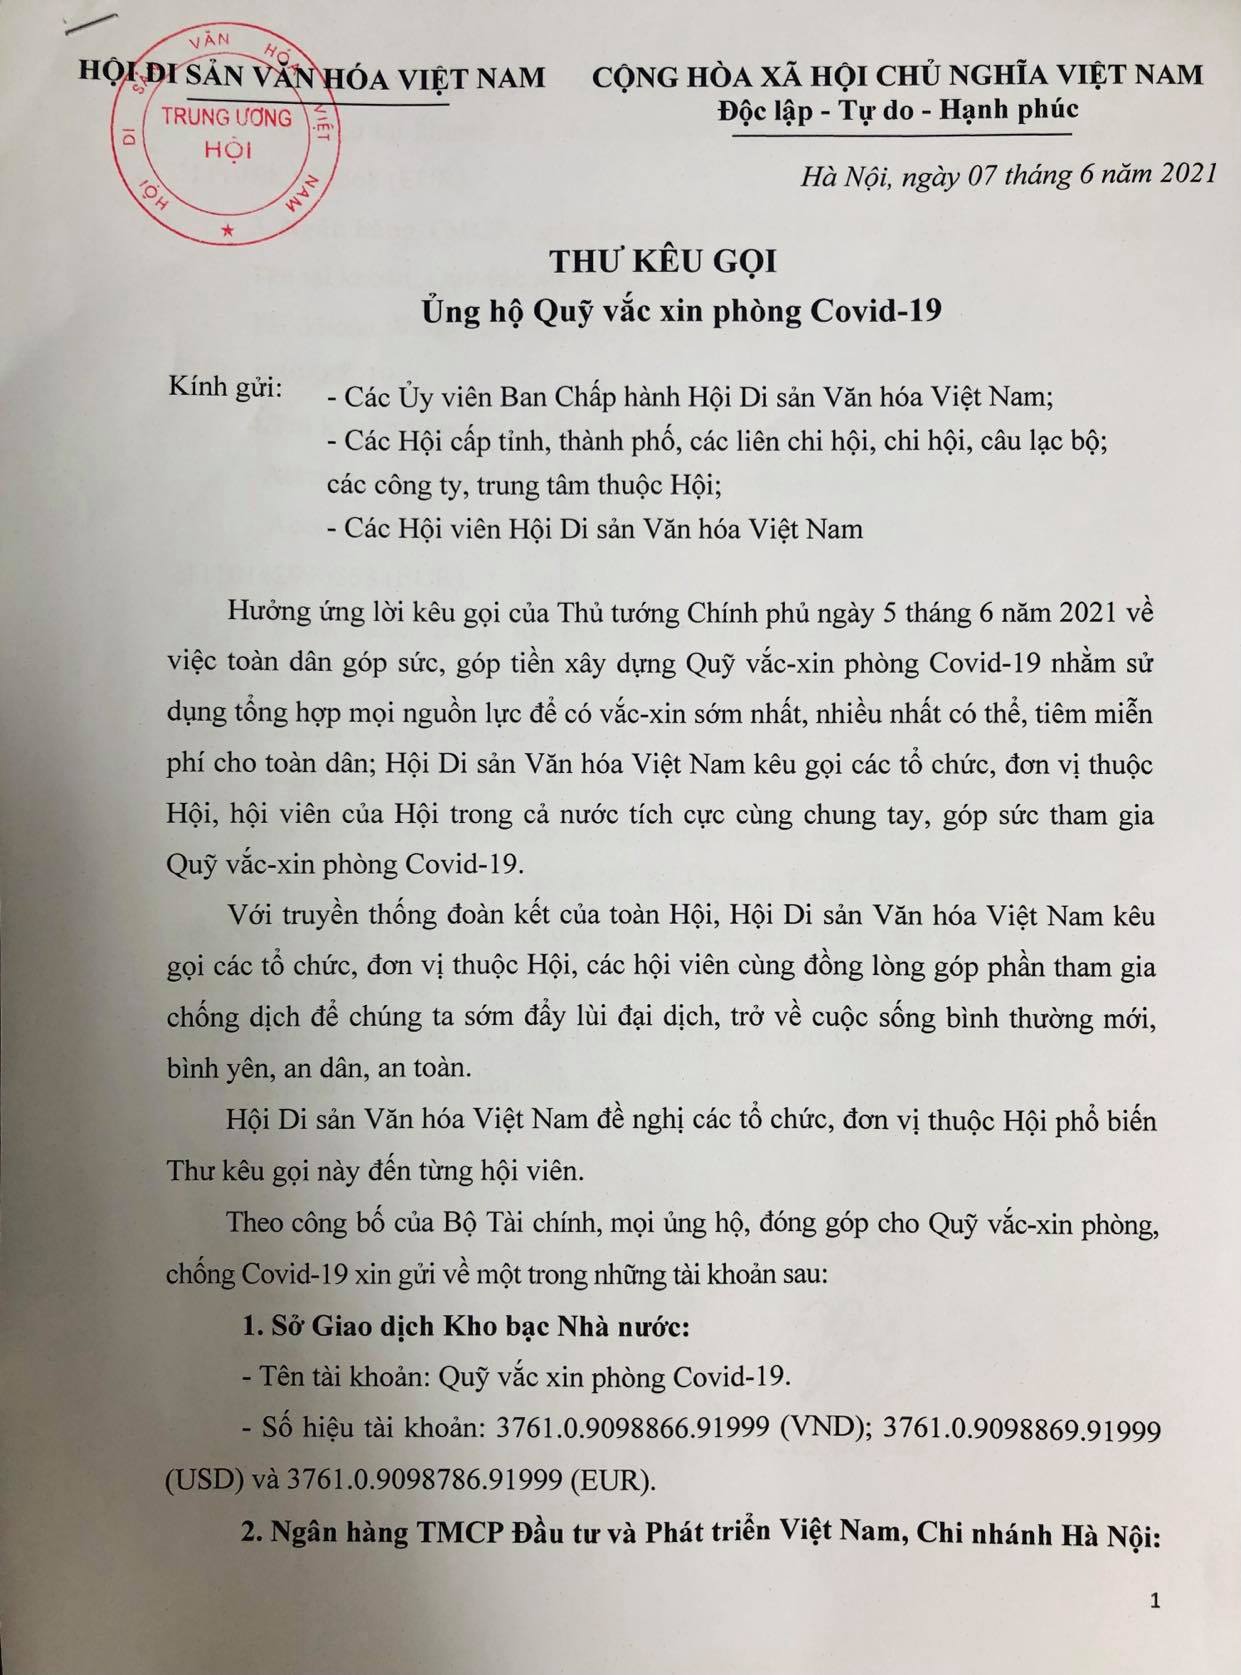 Hội Di sản Văn hóa Việt Nam kêu gọi các tổ chức, đơn vị, hội viên của Hội ủng hộ Quỹ vắc xin phòng Covid-19